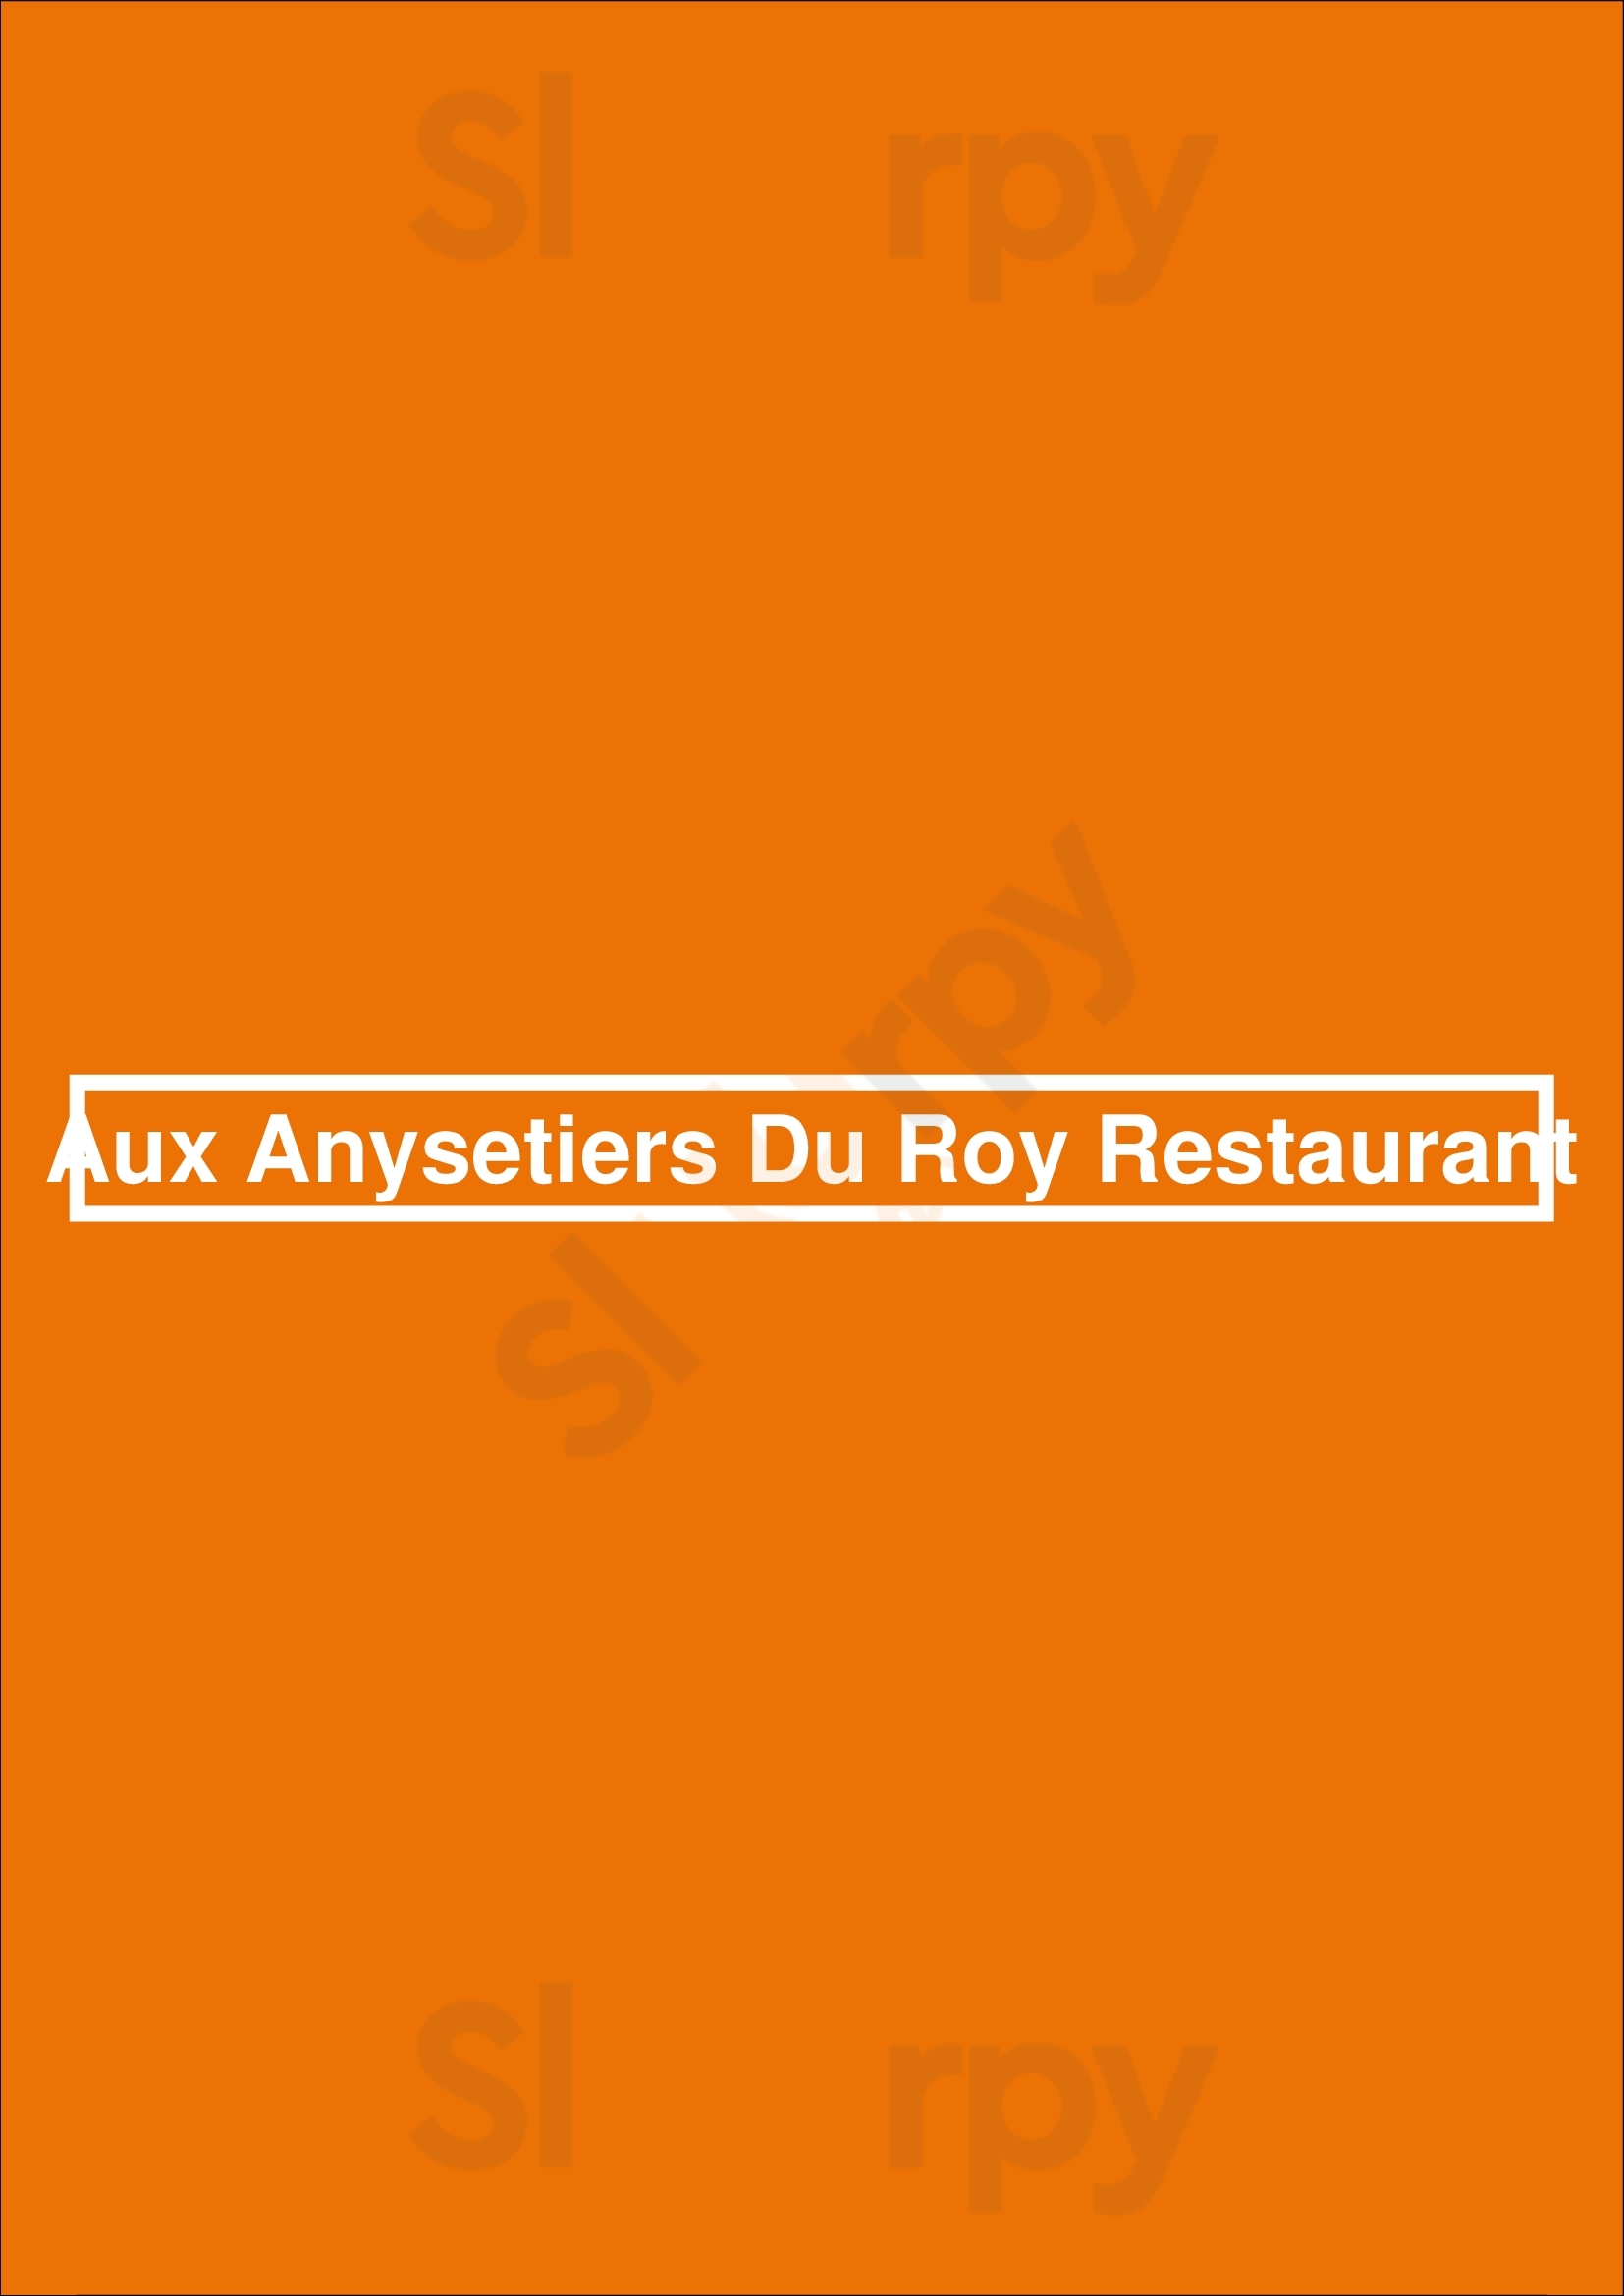 Aux Anysetiers Du Roy Restaurant Paris Menu - 1